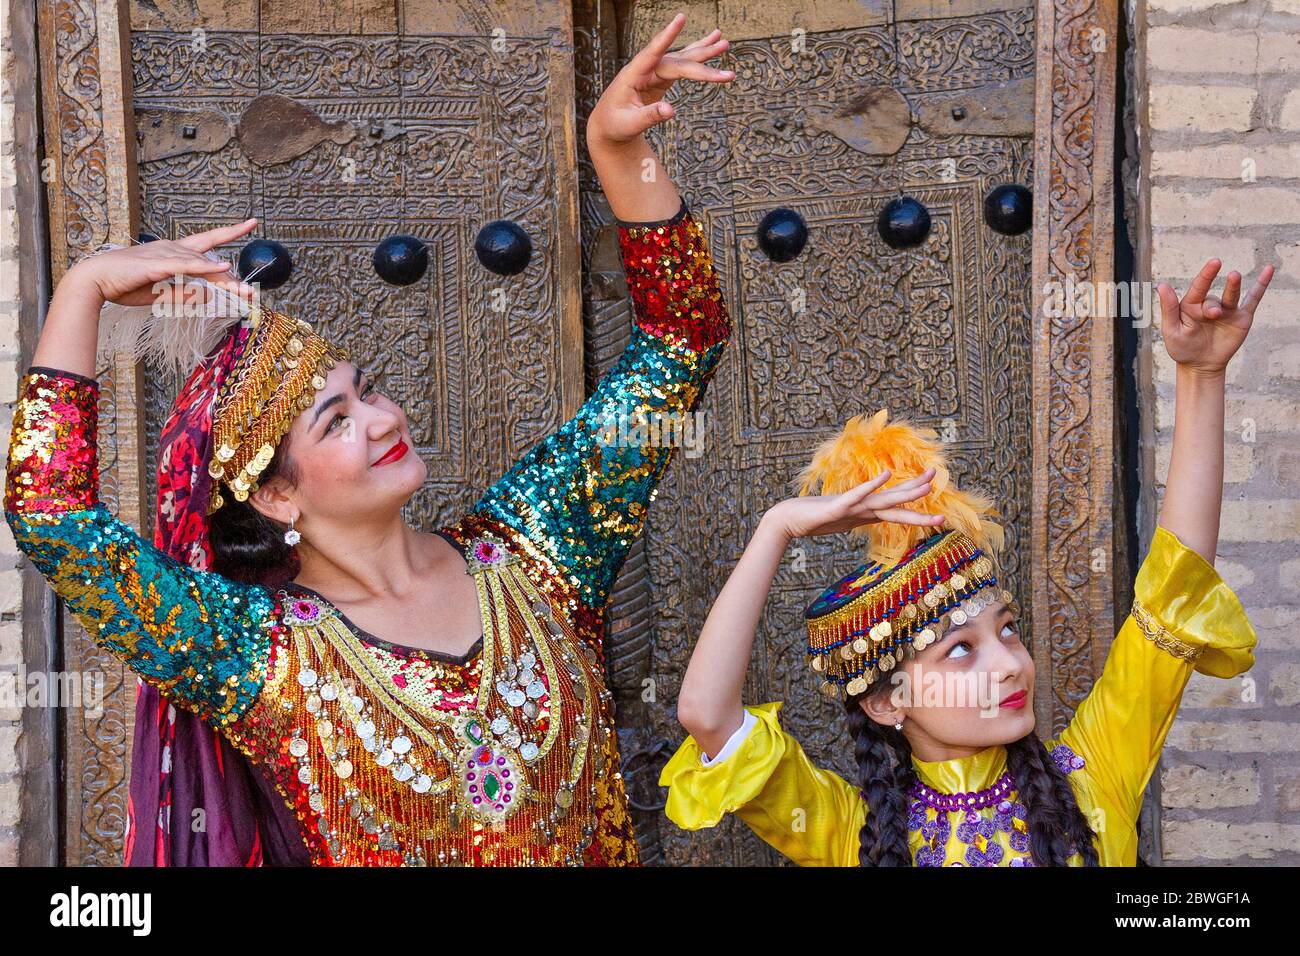 Signore uzbeko in abiti locali che eseguono danze tradizionali, a Khiva, Uzbekistan Foto Stock